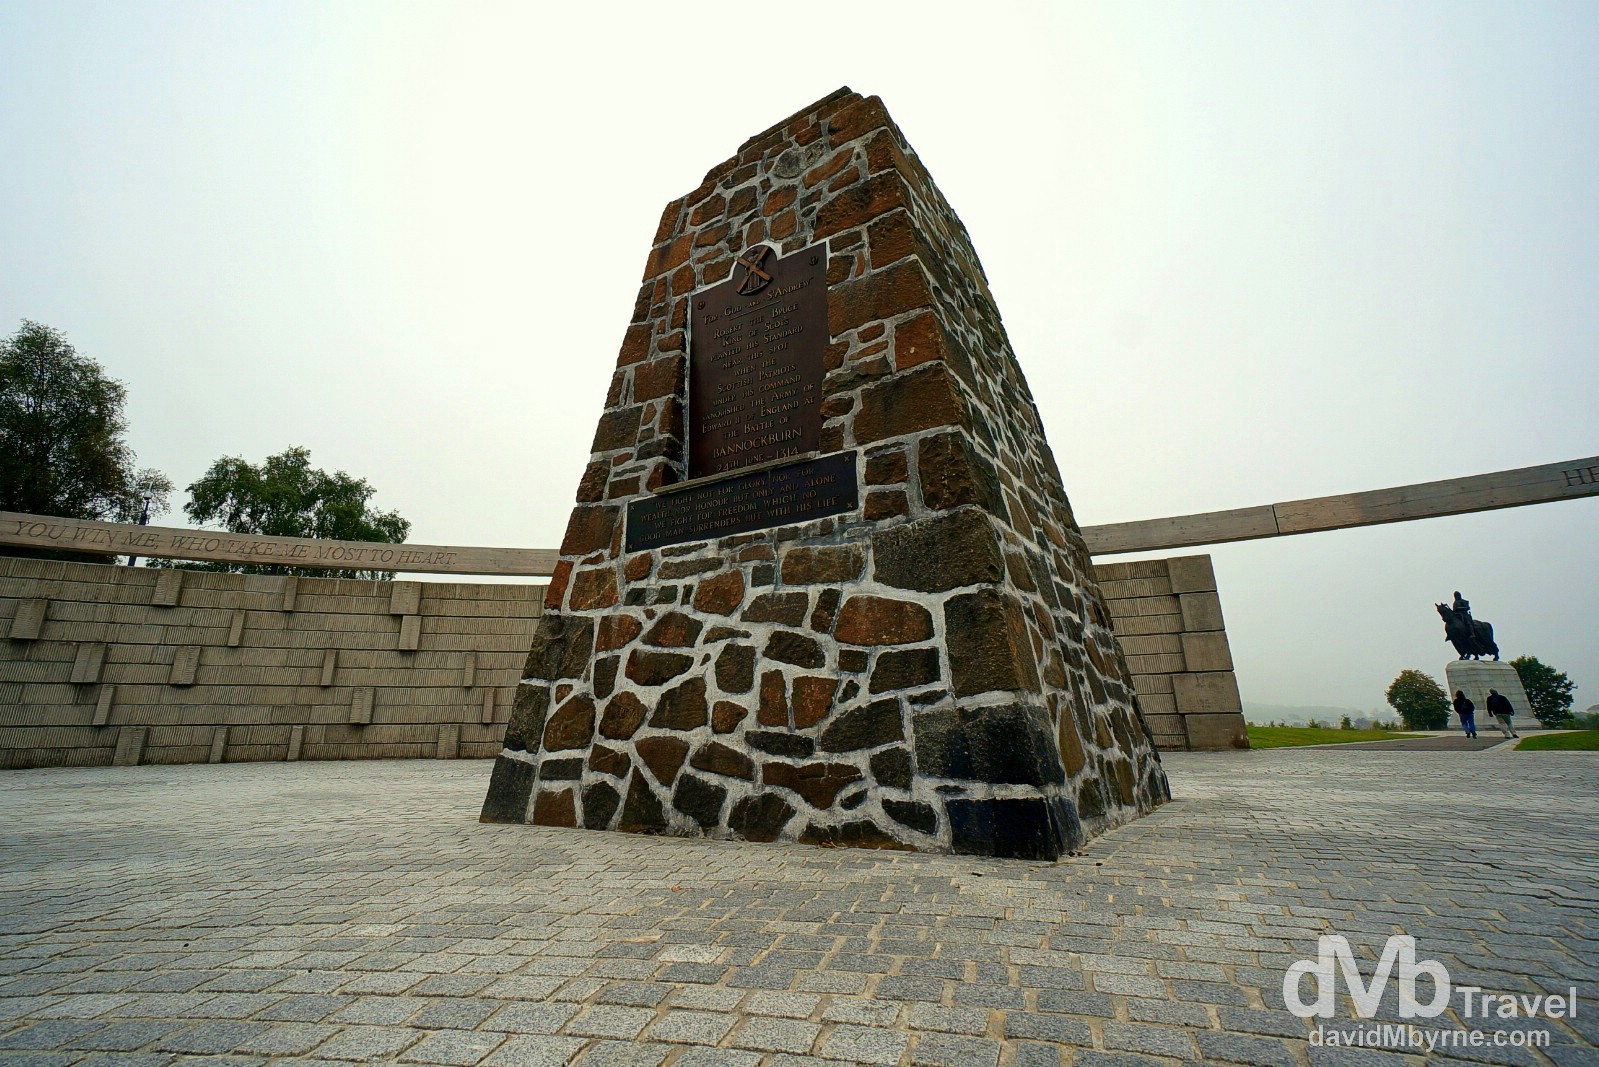 Battle of Bannockburn memorial, Bannockburn, Scotland. September 12, 2014.